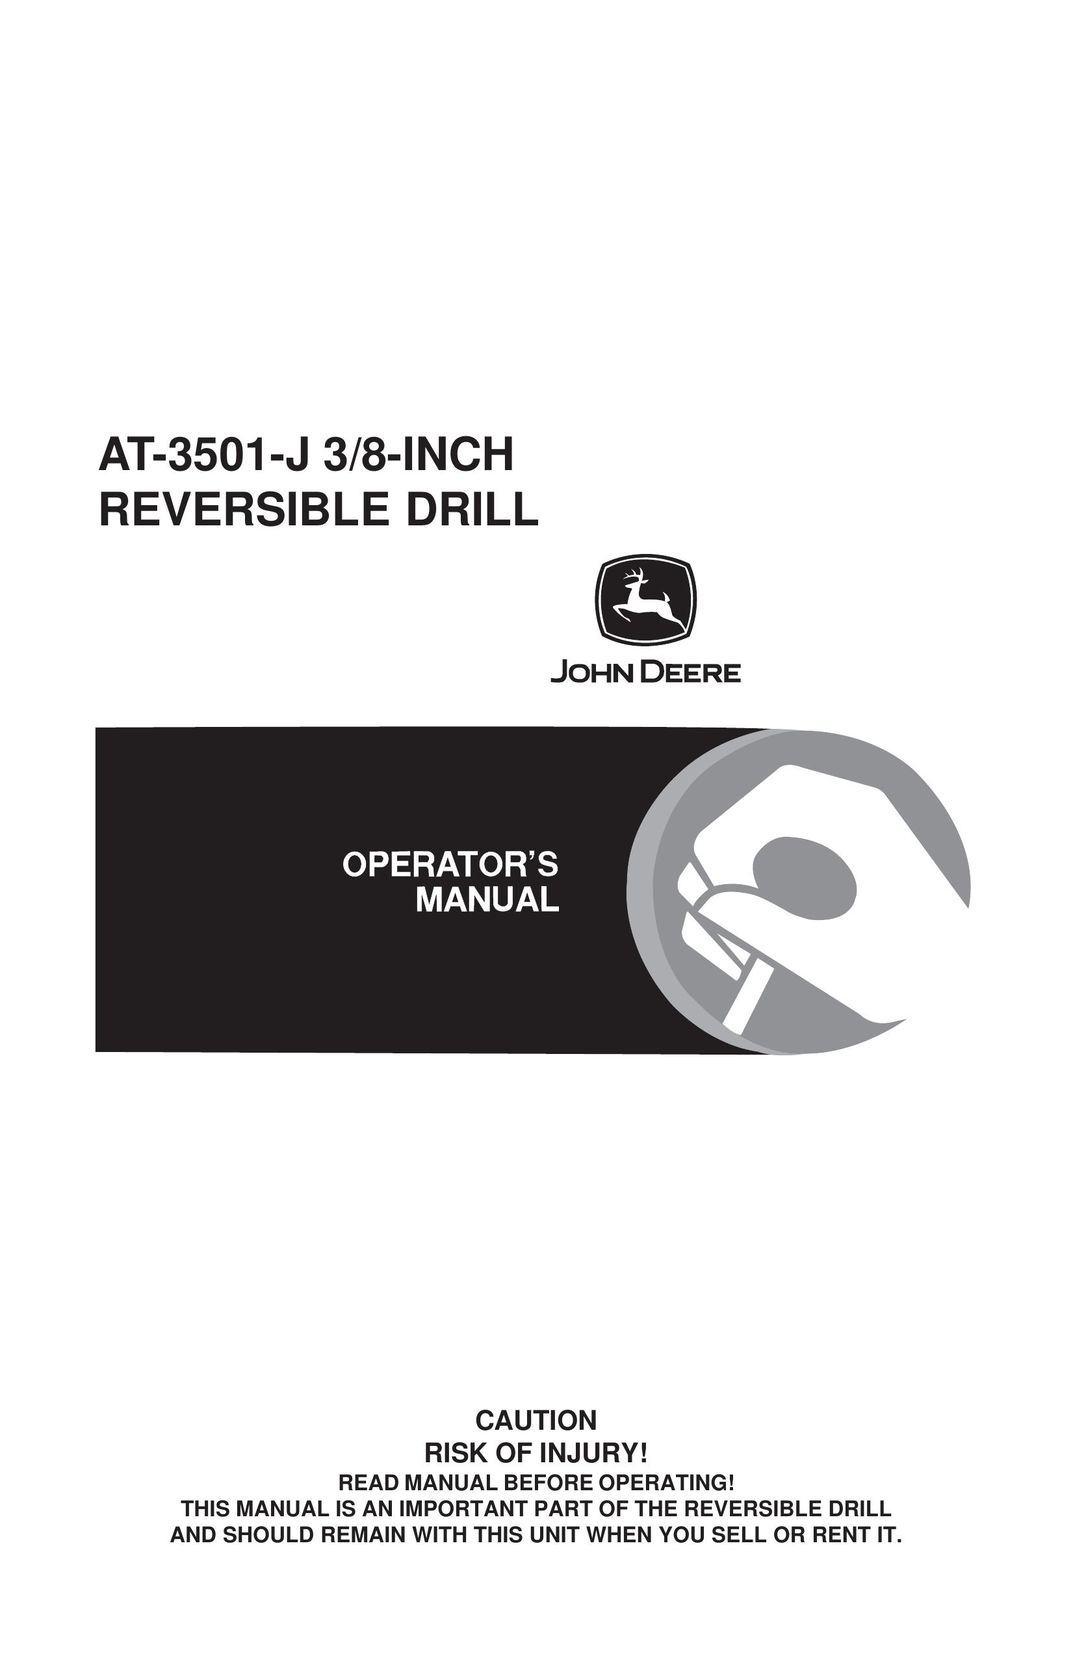 John Deere AT-3501-J Drill User Manual